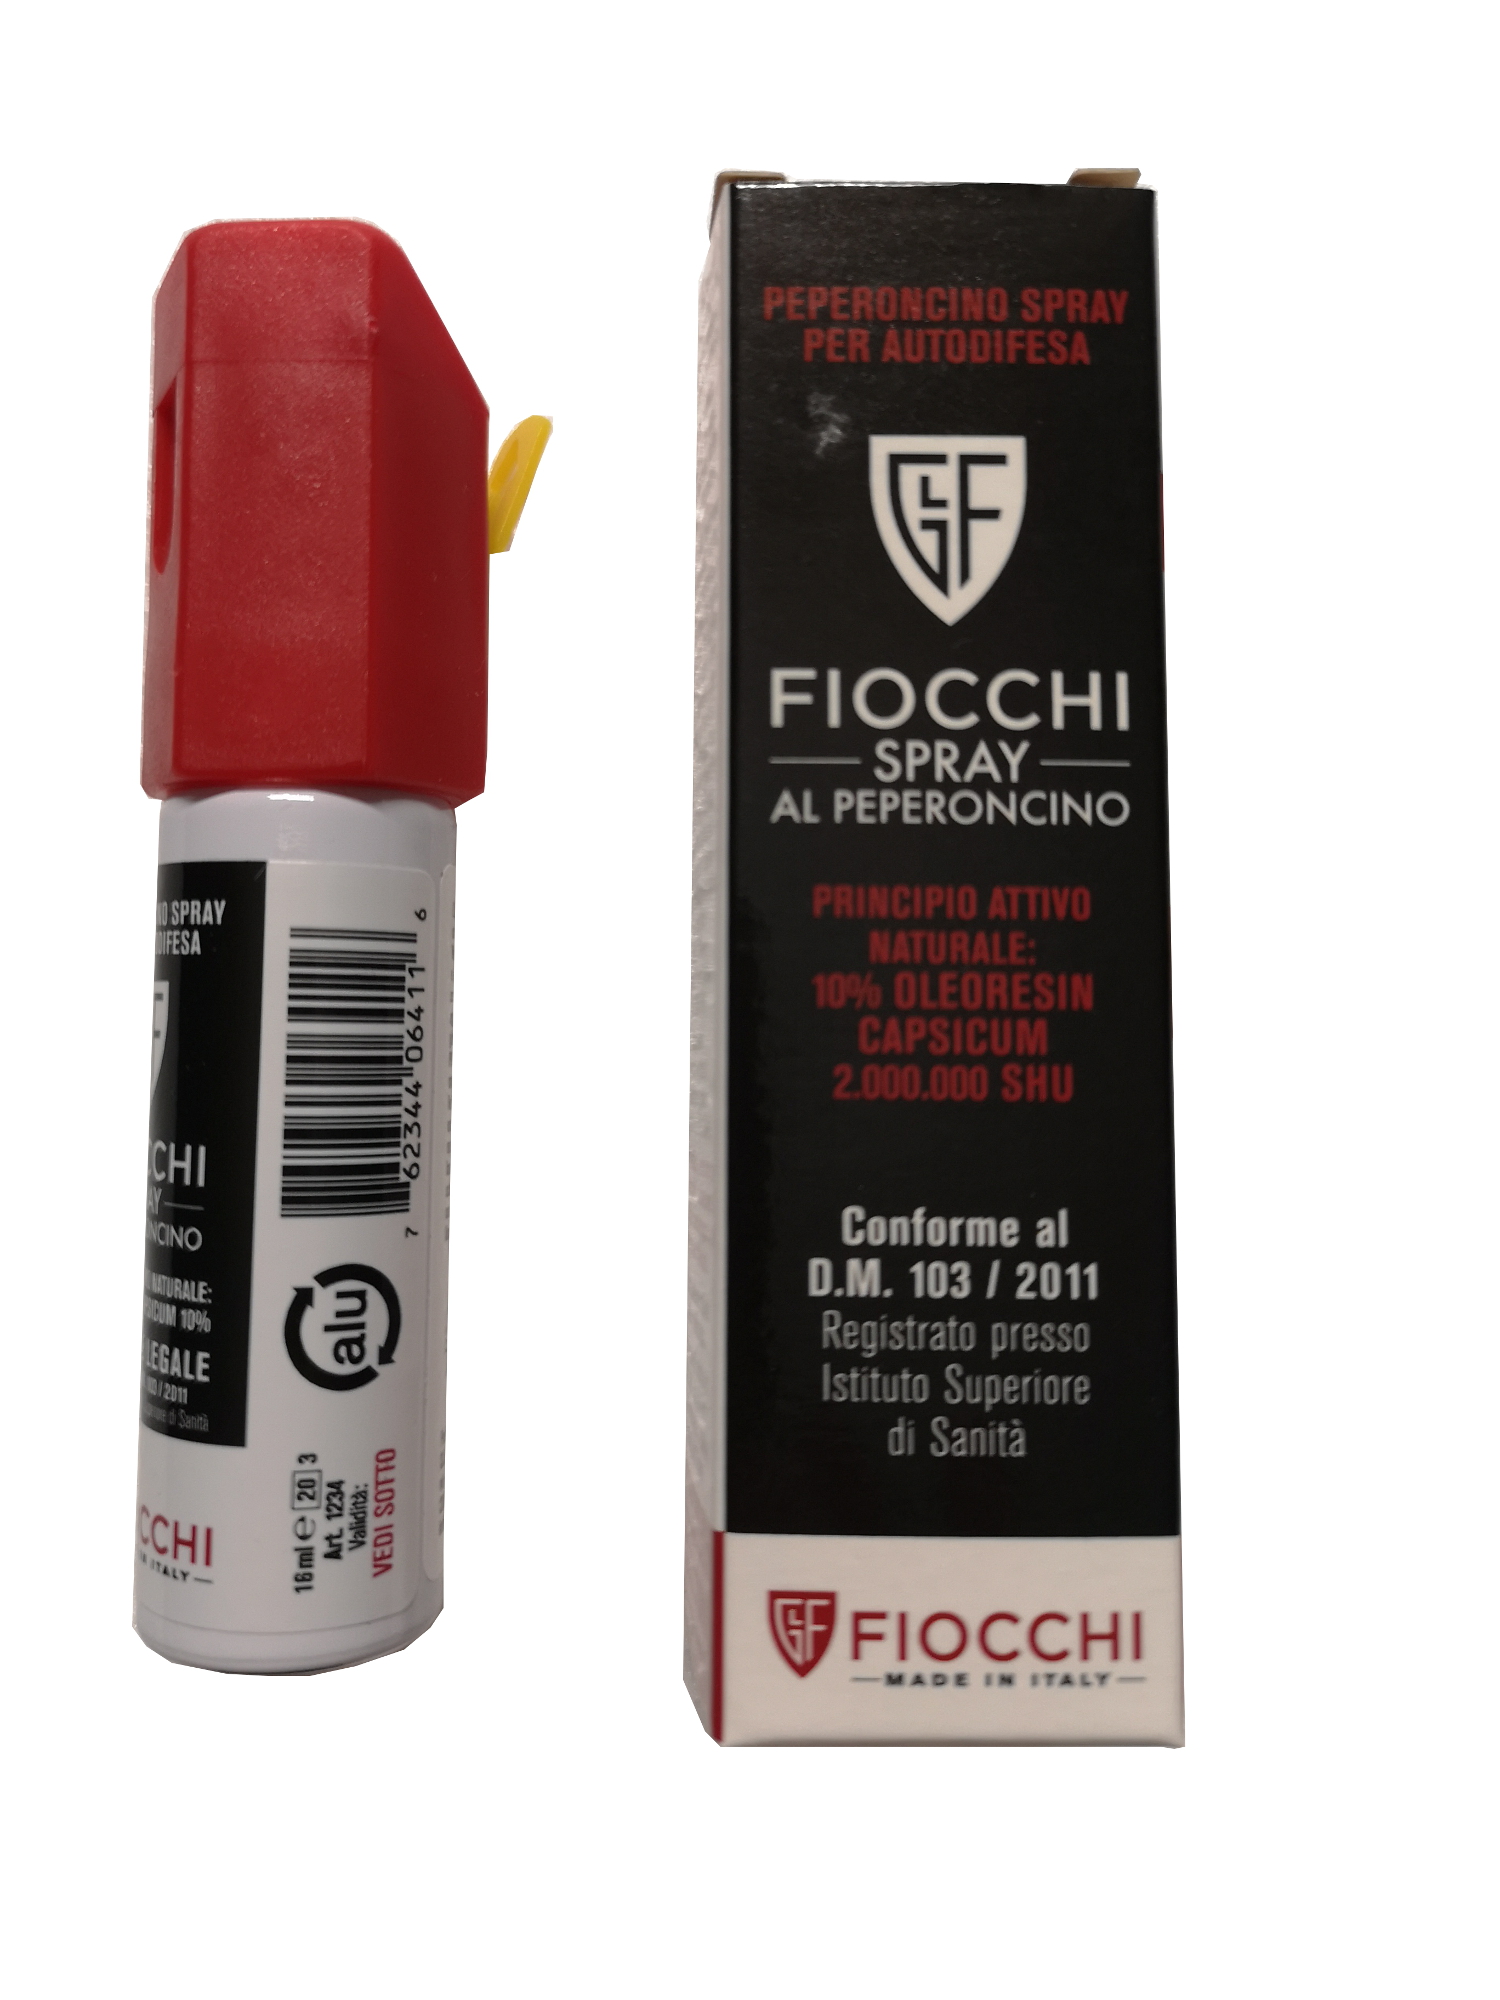 Italia Militare Blog - Spray al peperoncino: 9 cose da sapere